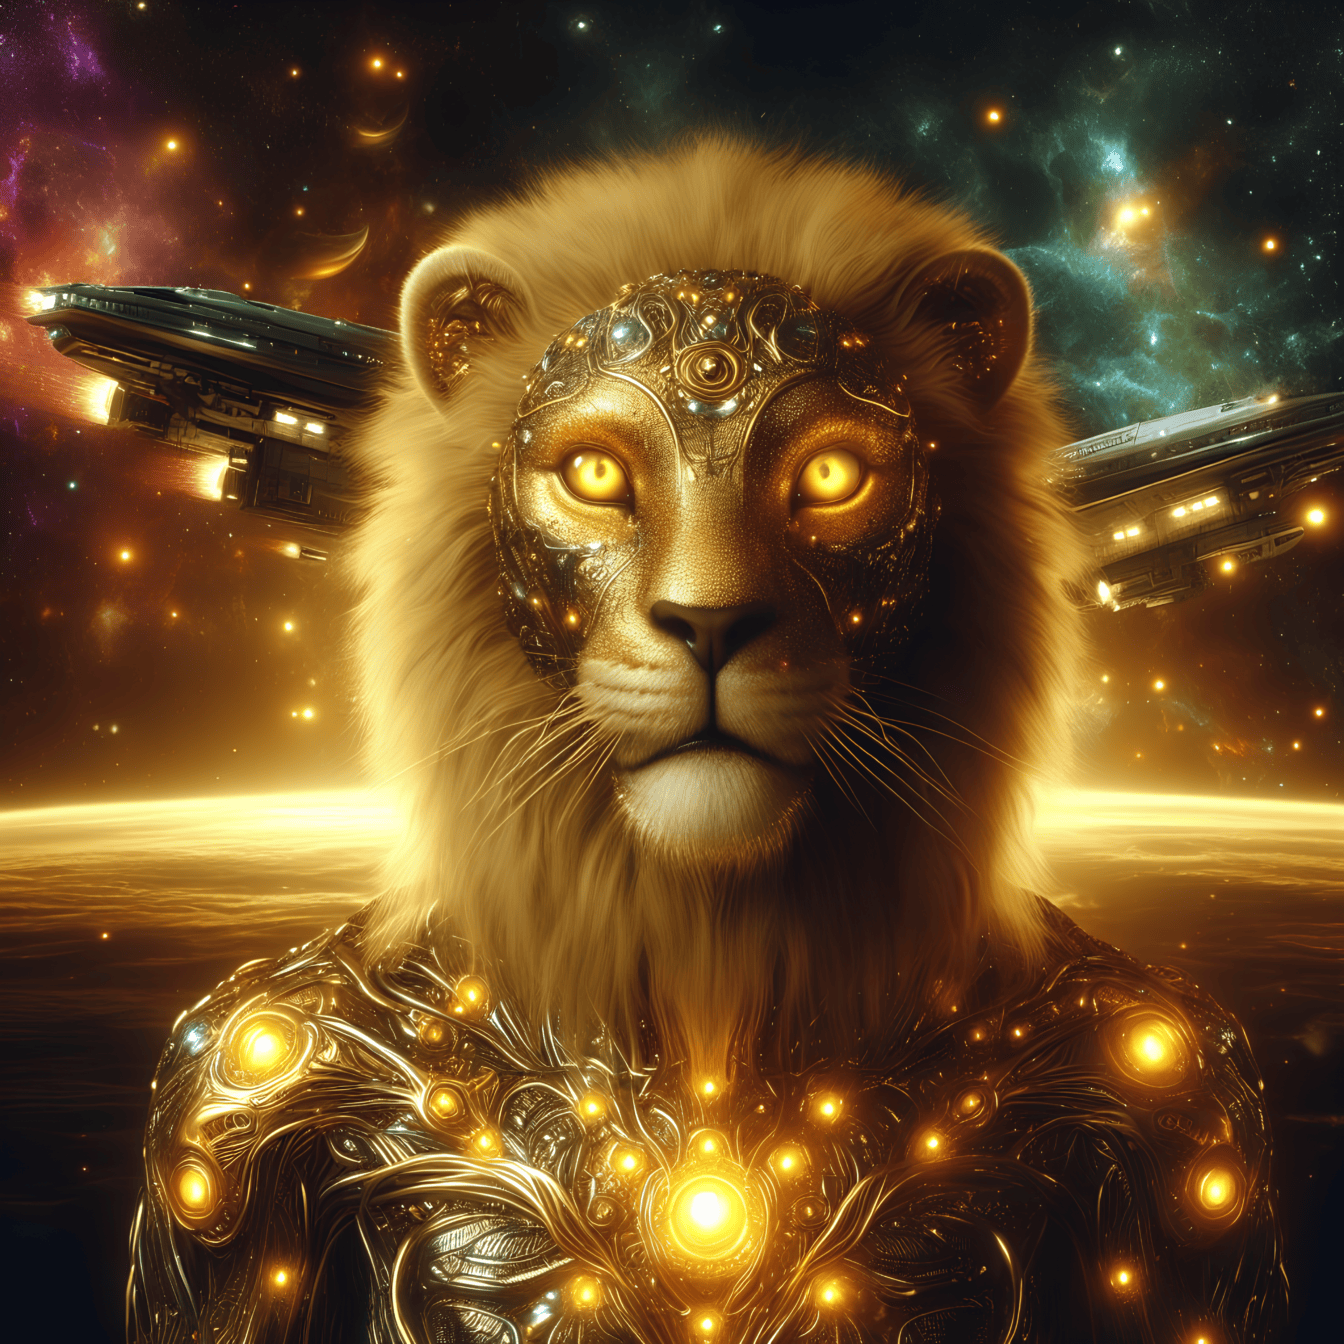 Portrett av en gylden guddom, en løve-cyborg fremmed i glødende rustning med romfartøy i bakgrunnen